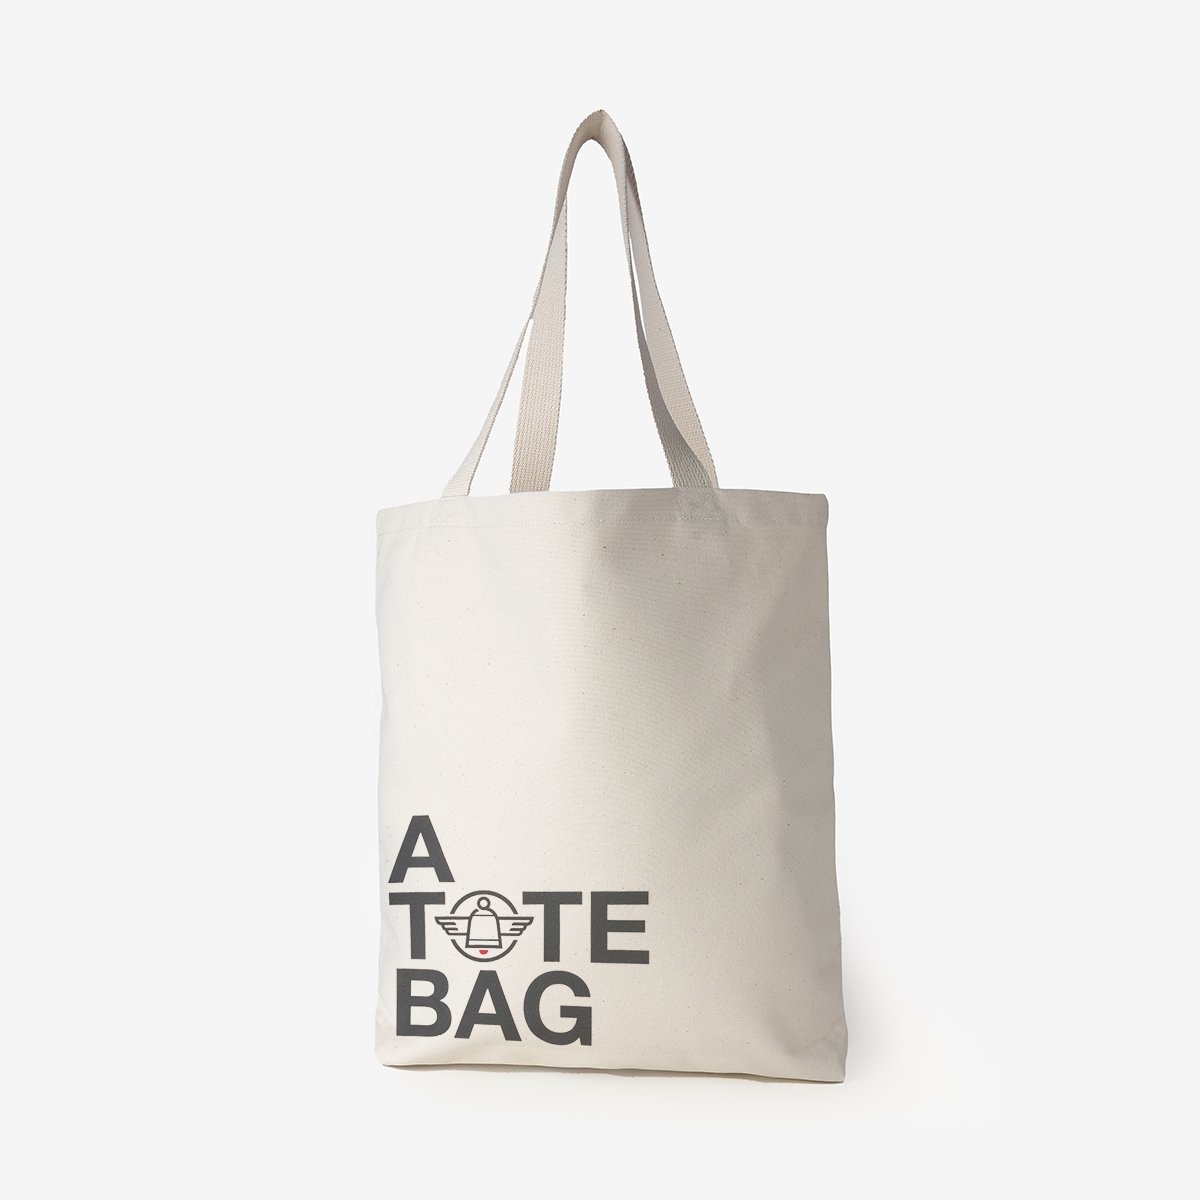 IH-TOTE-ATOTEBAG Printed Canvas Tote Bag - 'A Tote Bag' Print - 1